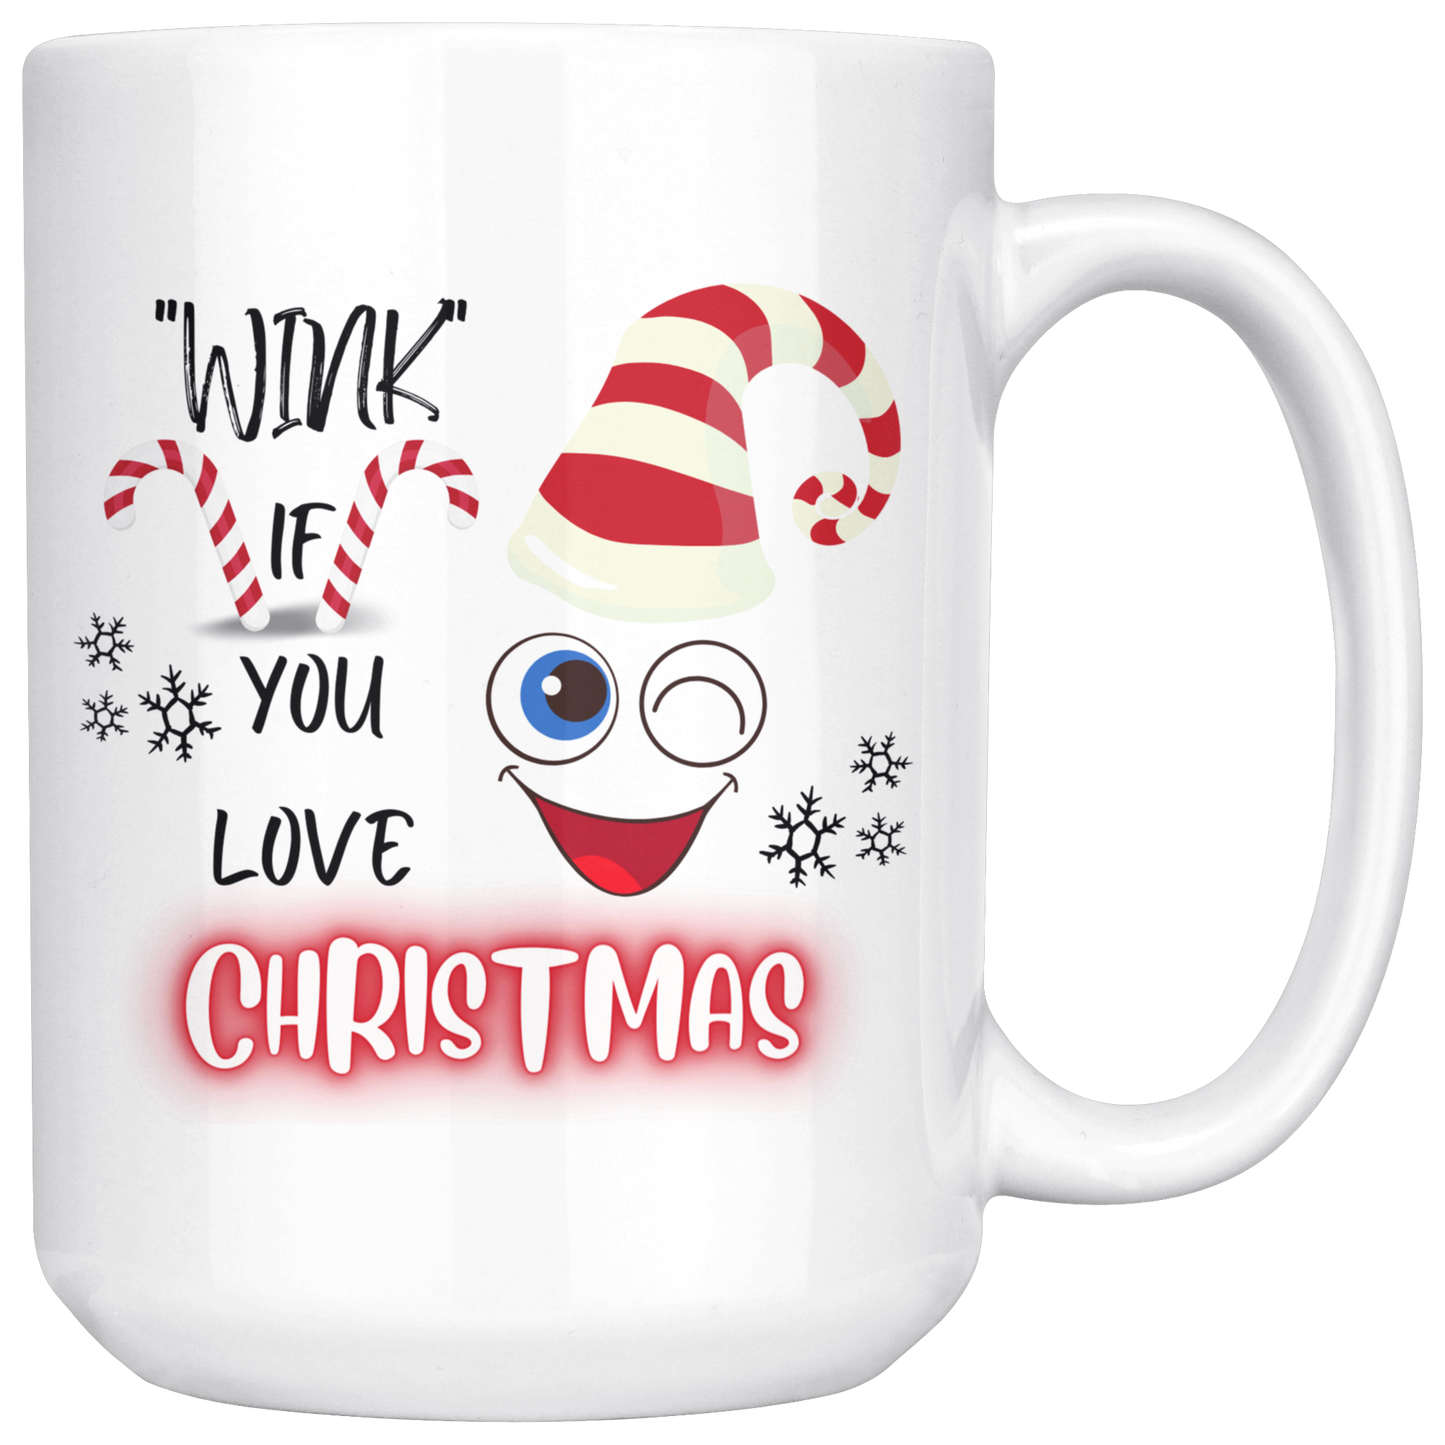 Wink If You Love Christmas Mug